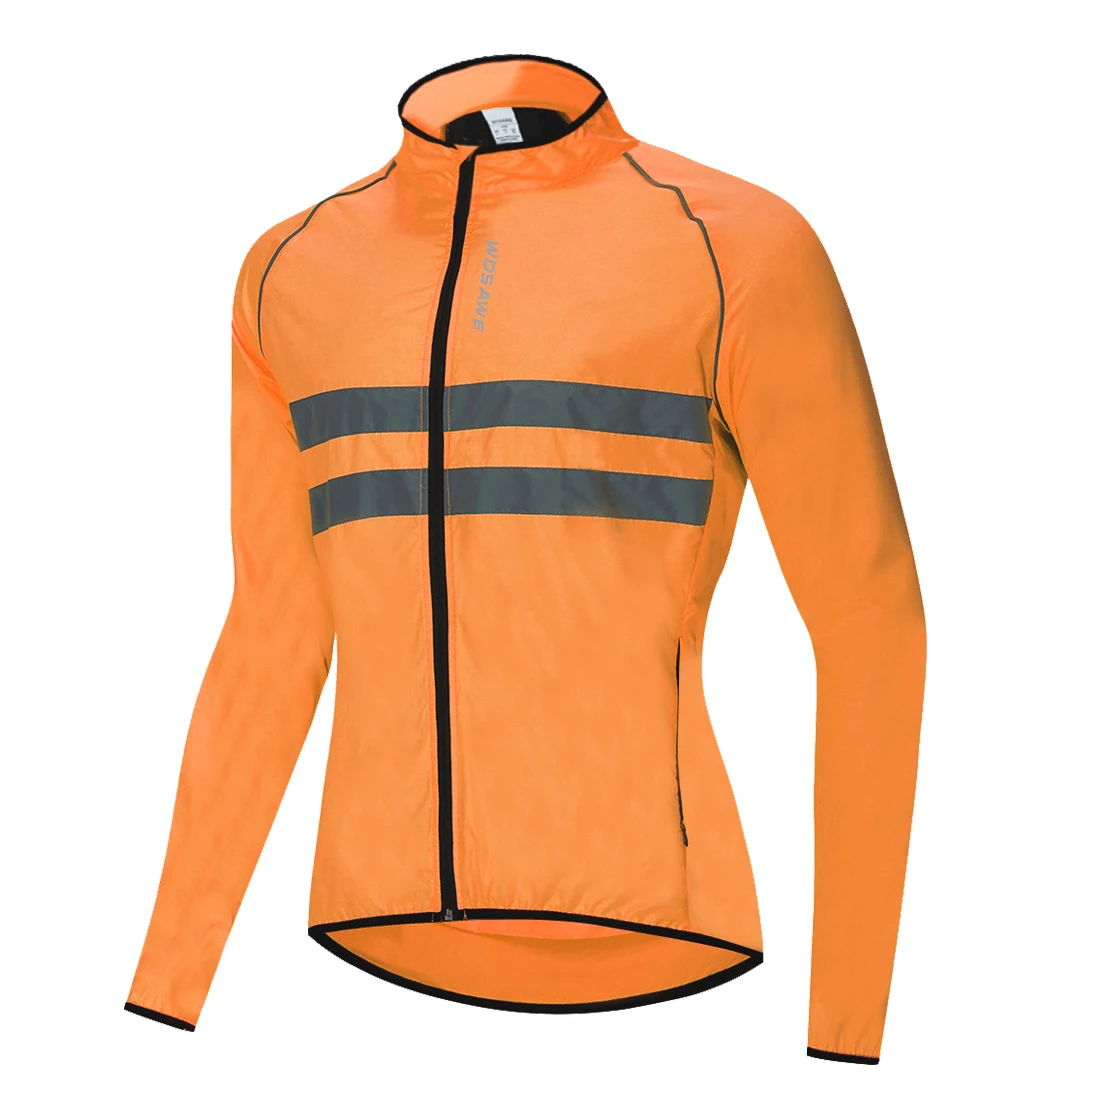 WOSAWE велосипедный велосипед Ciclismo ветровка Высокая видимость куртка Джерси Ультралегкая водоотталкивающая ветрозащитная велосипедная куртка - Цвет: Оранжевый